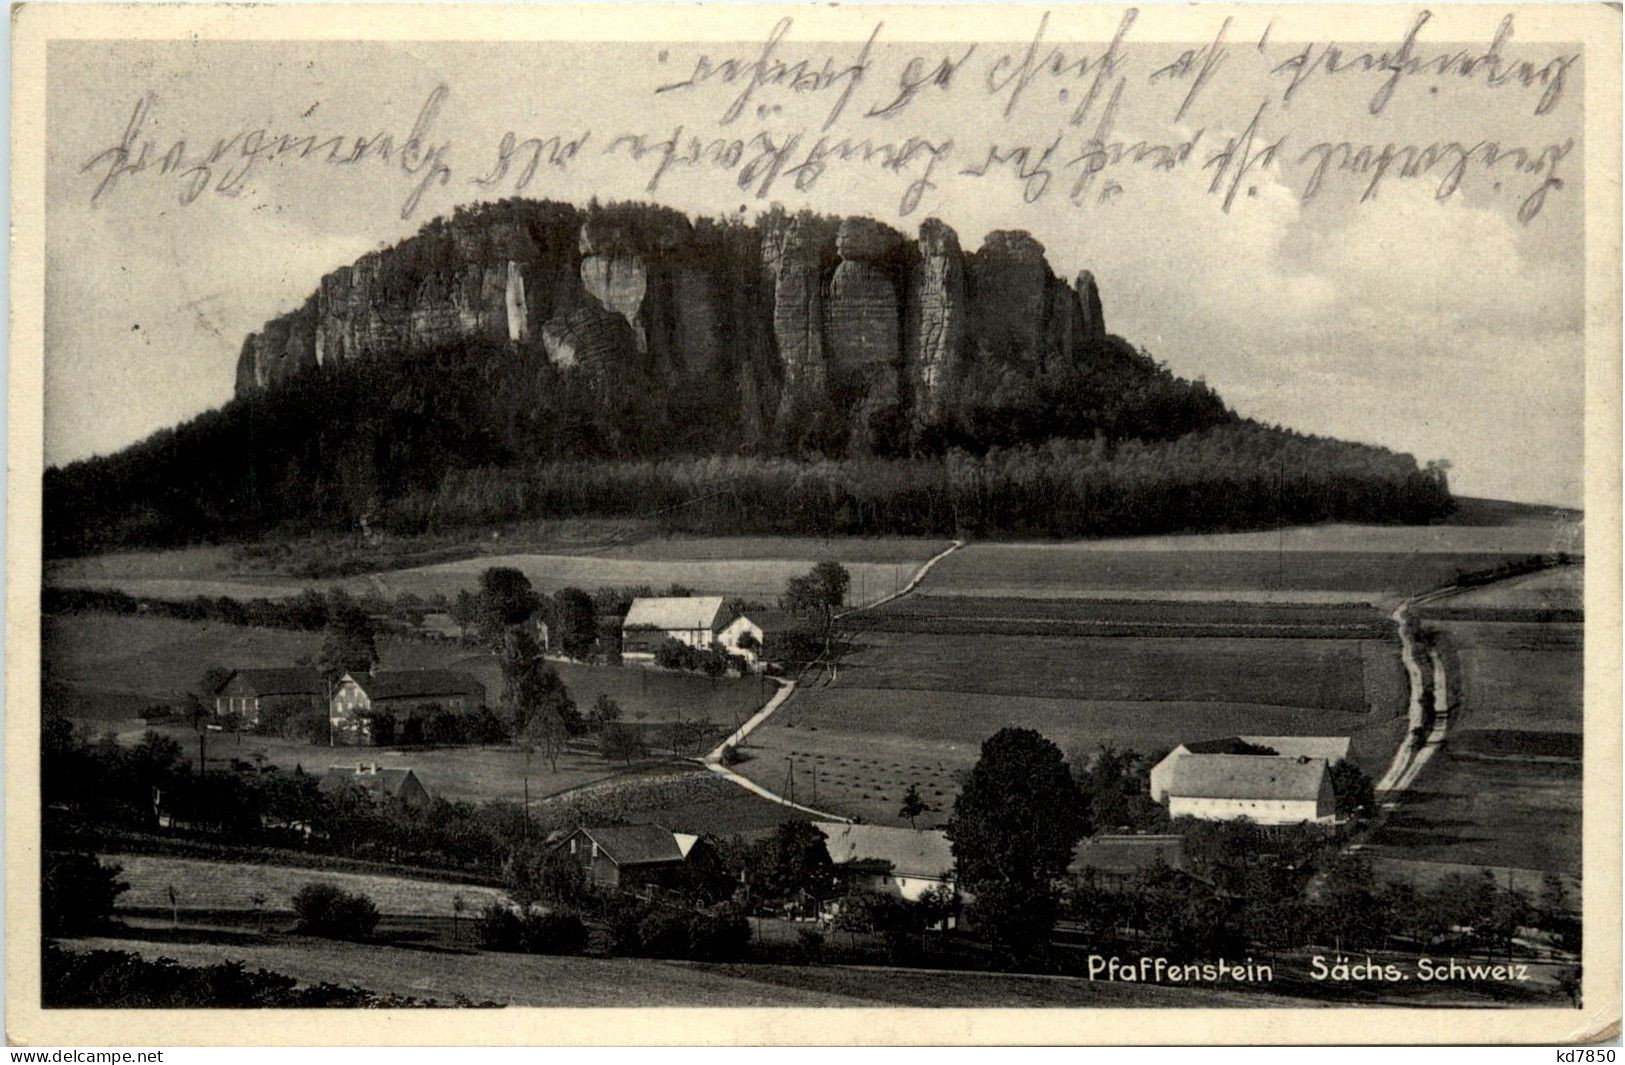 Pfaffenstein - Koenigstein (Saechs. Schw.)